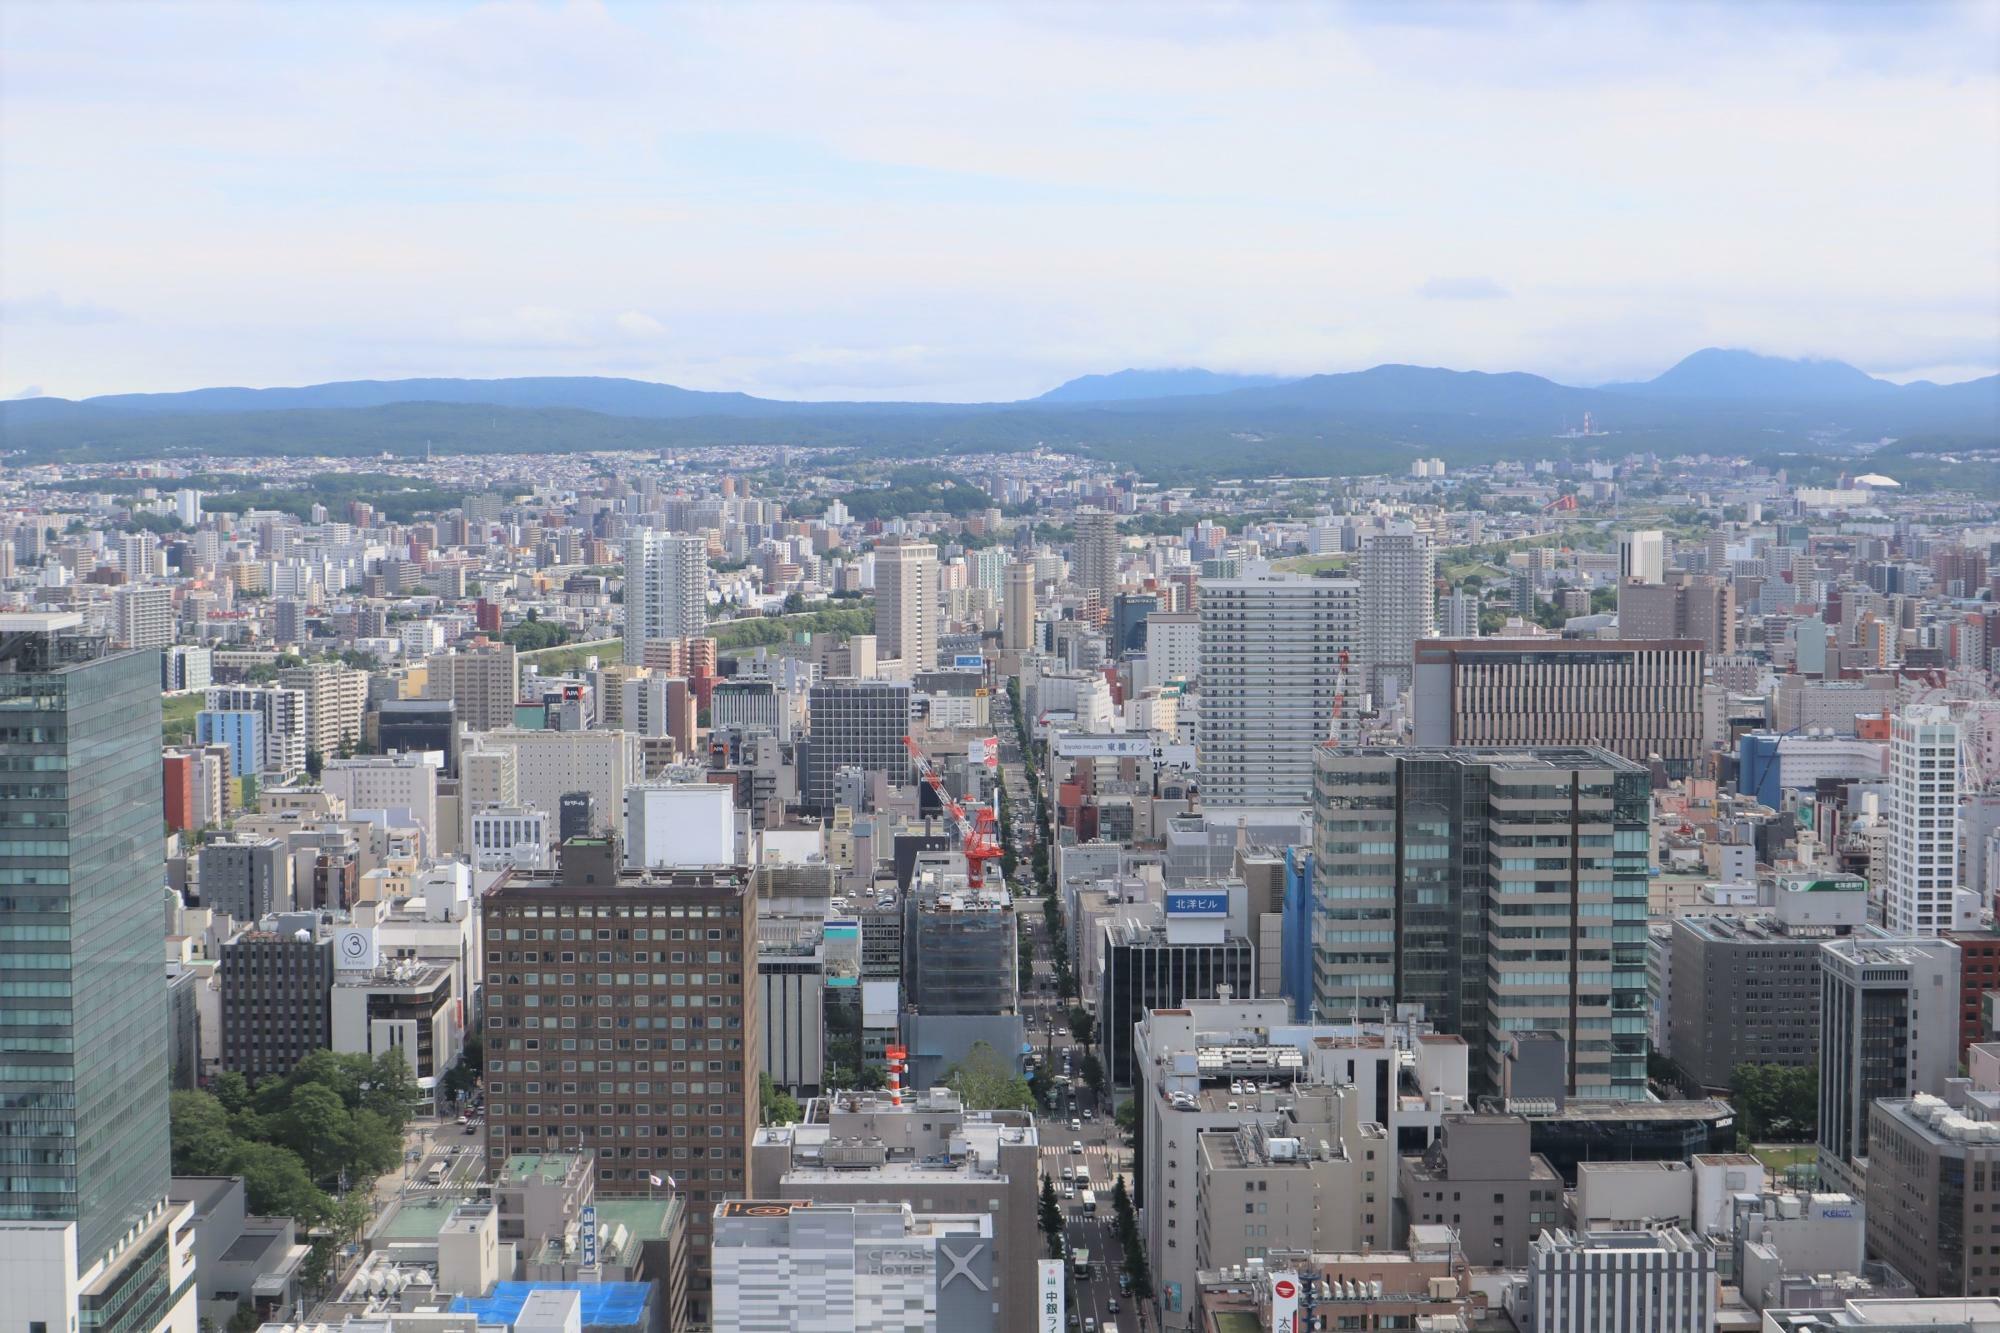 左手前の茶色の建物は札幌市役所です。